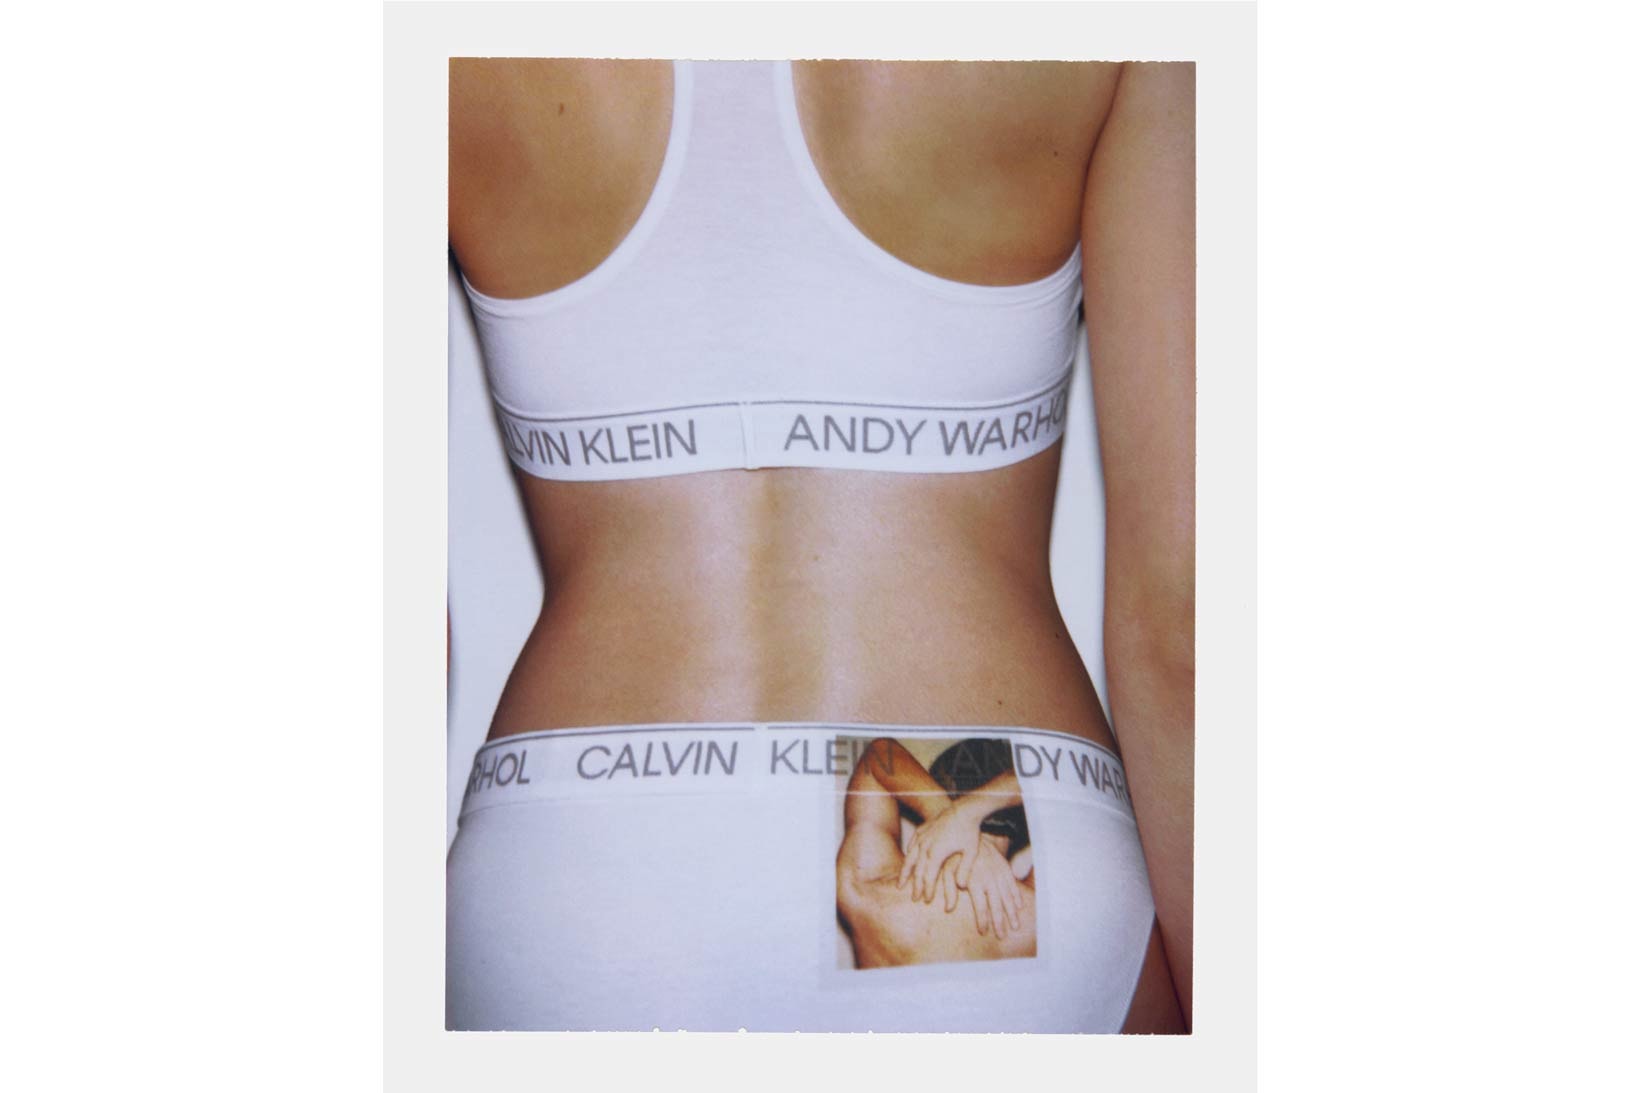 Calvin Klein Underwear Andy Warhol Lookbook